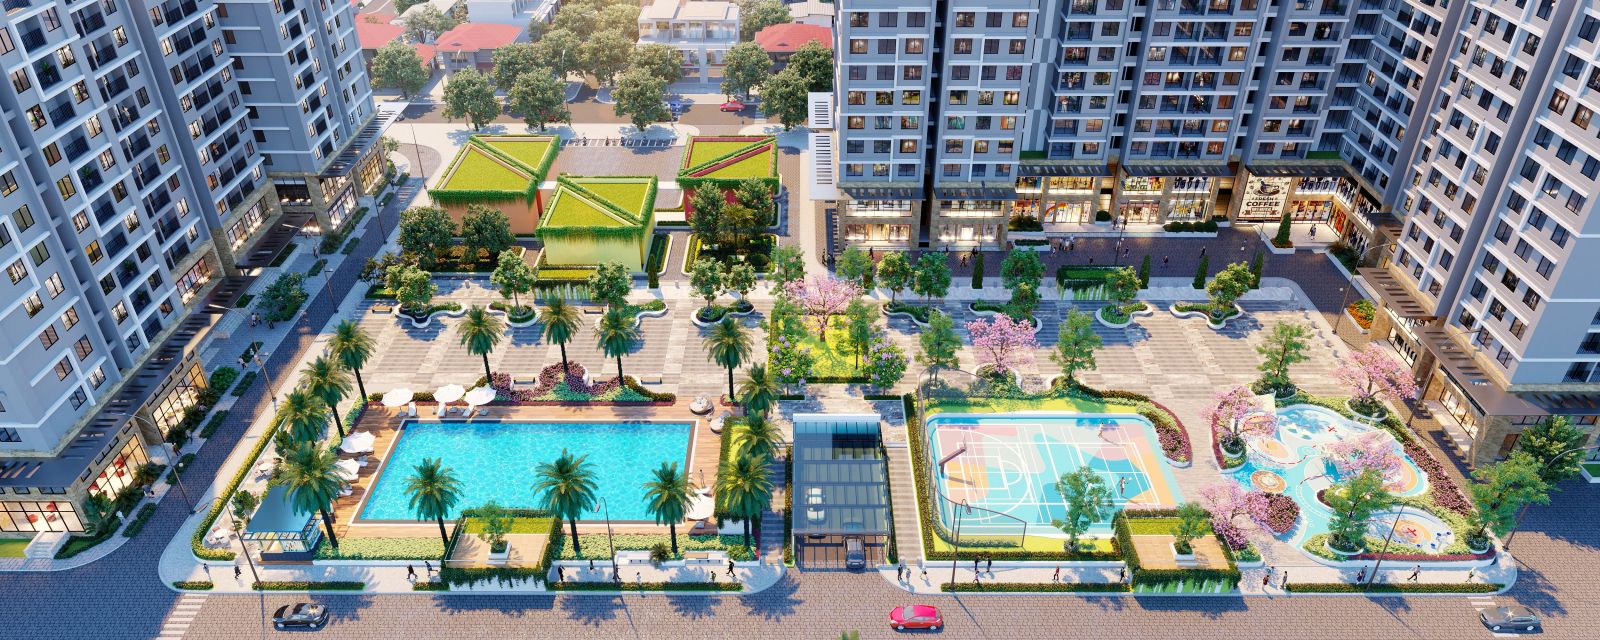 Tổ hợp căn hộ sở hữu bể bơi phong cách resort tại Tây Nam Linh Đàm - Ảnh 2.